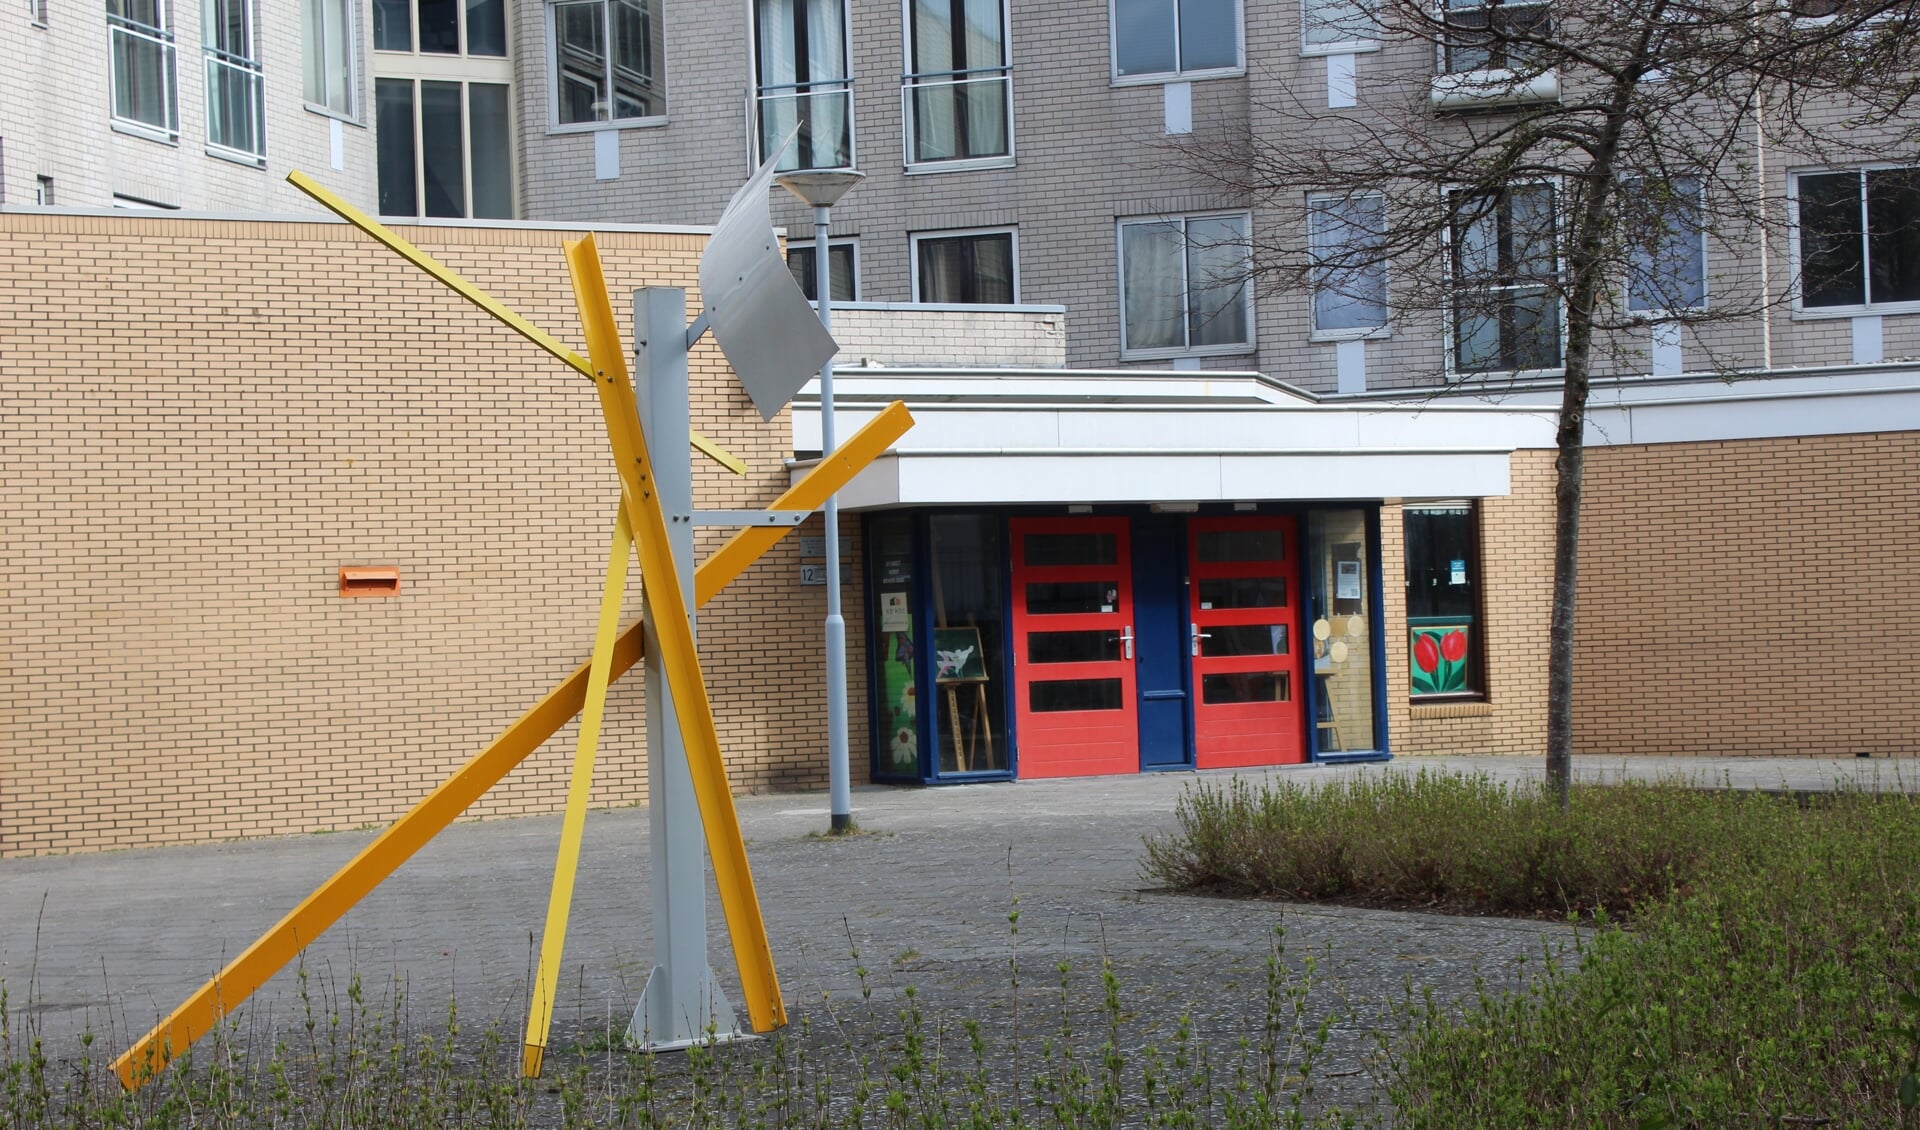 De voormalige bibliotheek aan het Fluitpolderplein wordt weer in gebruik genomen; de nieuwe vestiging aan het Fluitpolderplein 5 wordt waarschijnlijk verkocht of verhuurd (foto: DJ).